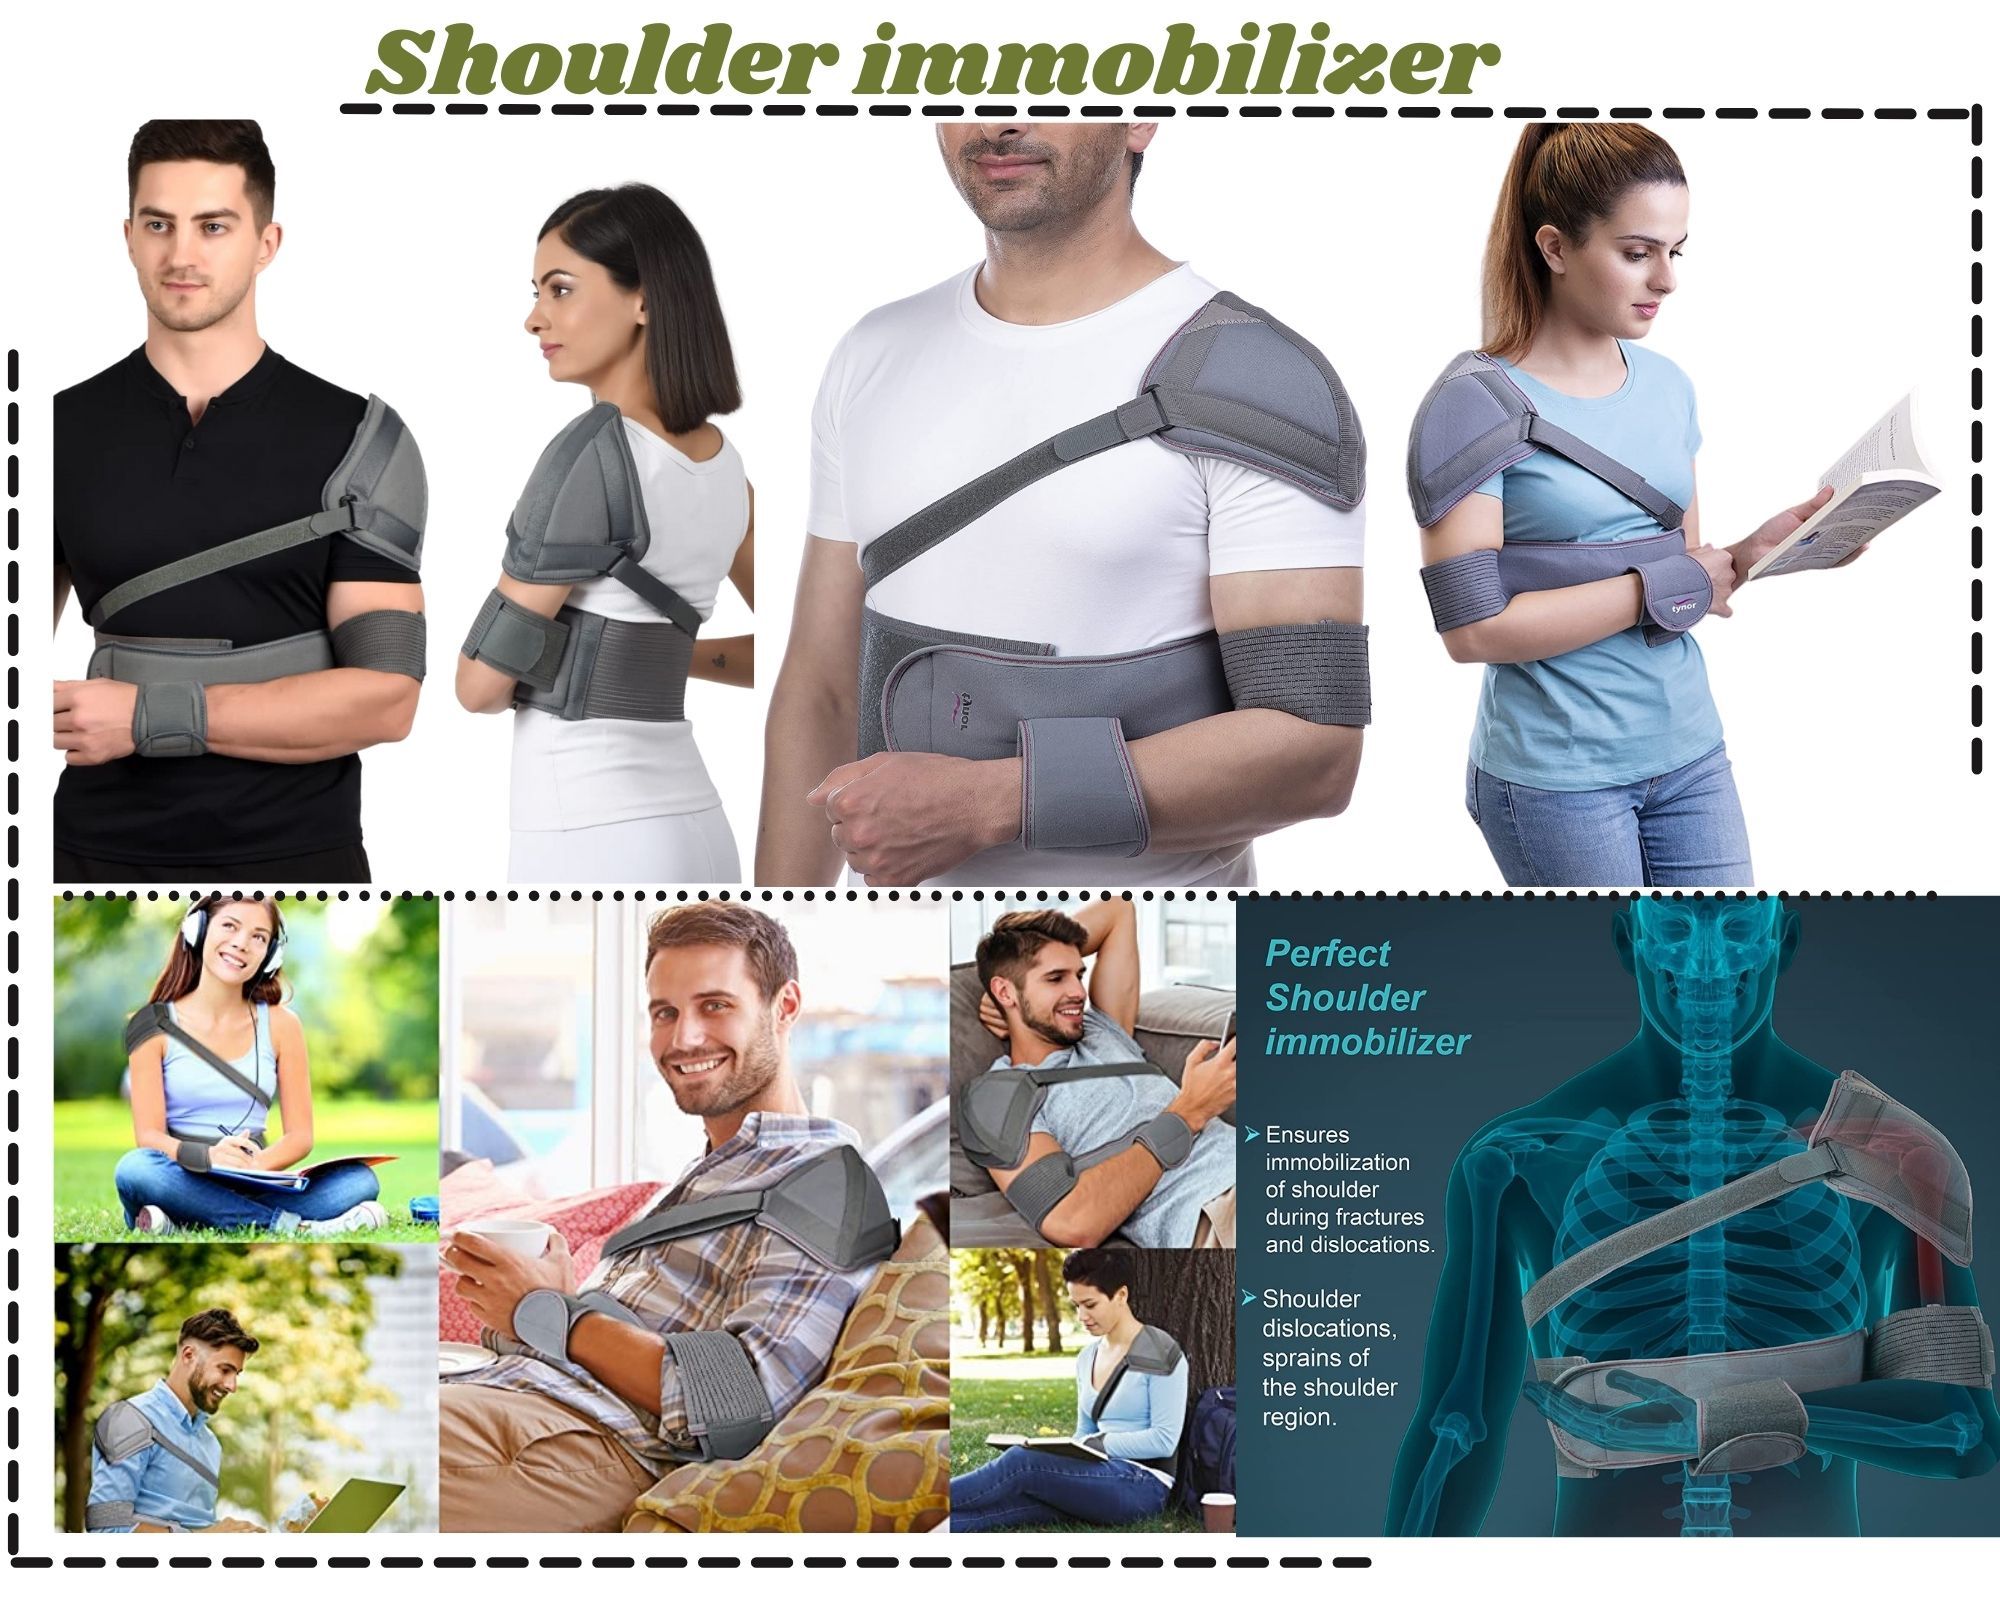 Shoulder Immobiliser